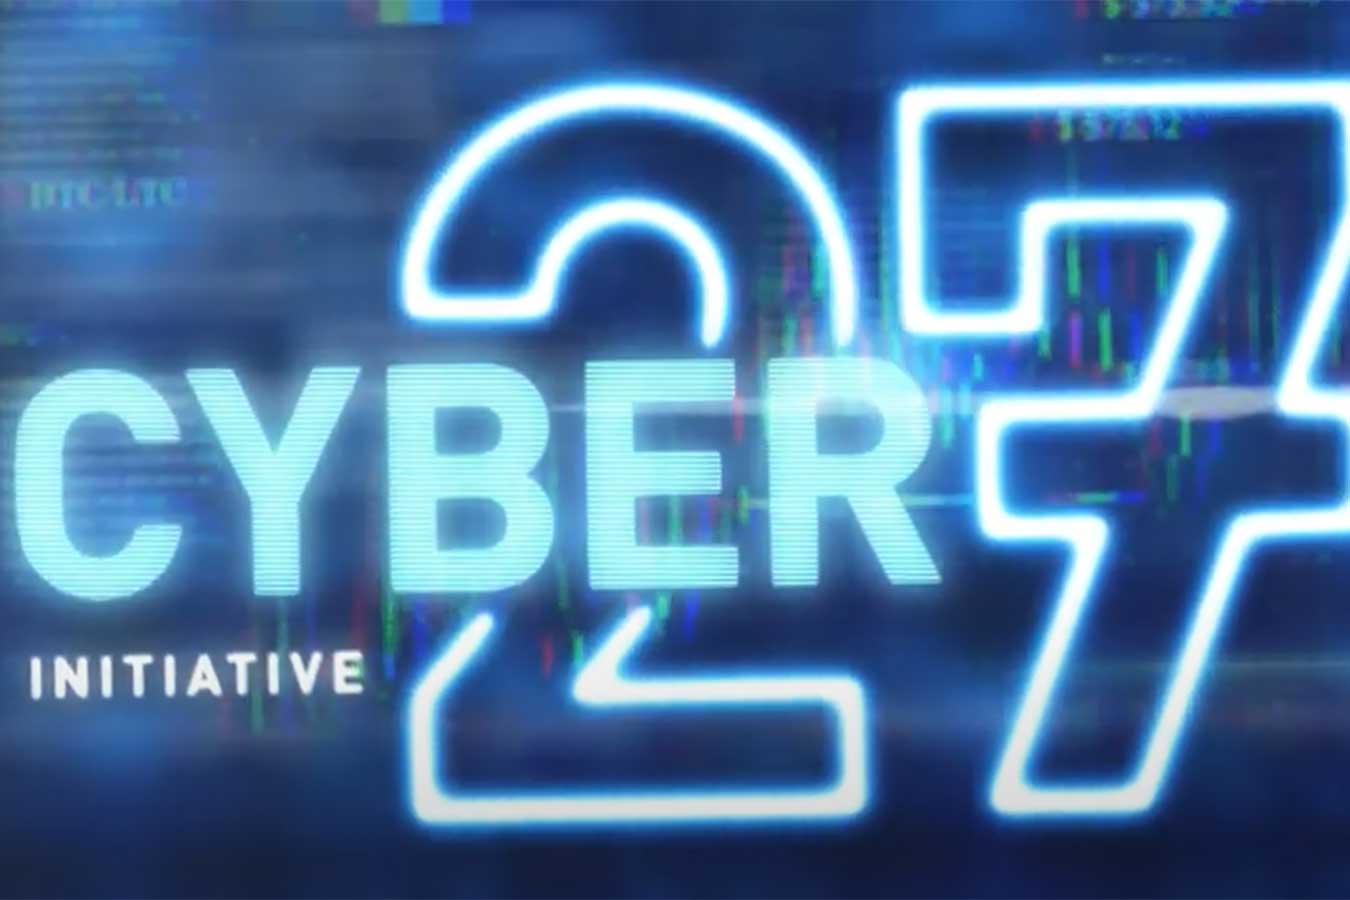 DSU Cyber 27 Initiative campaign logo